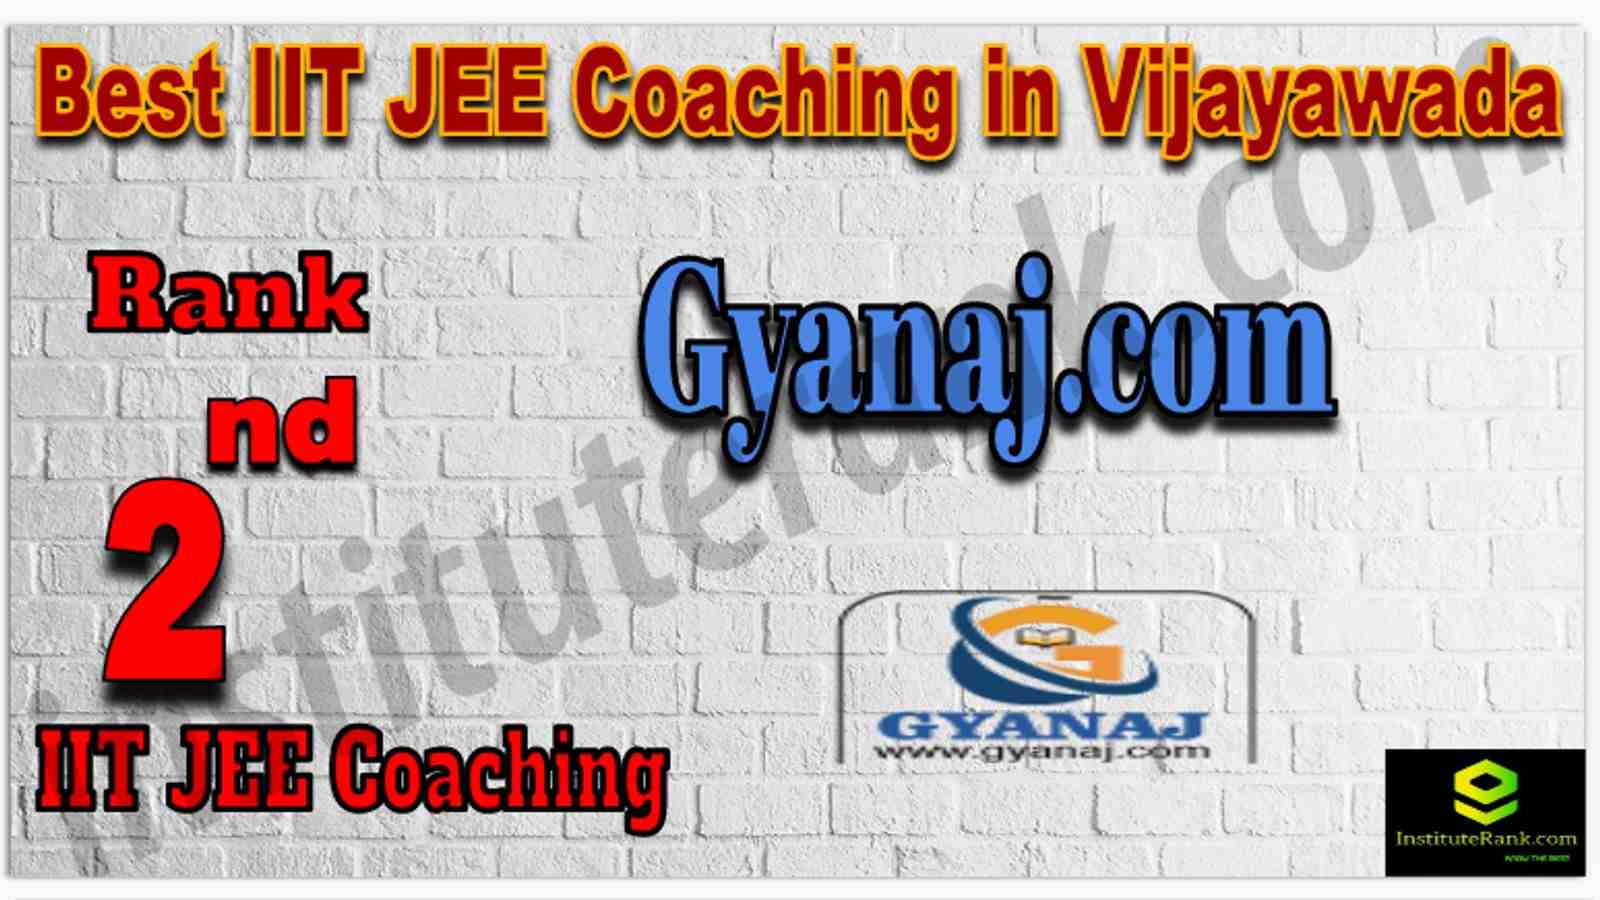 Rank 2nd Best IIT JEE Coaching in Vijayawada